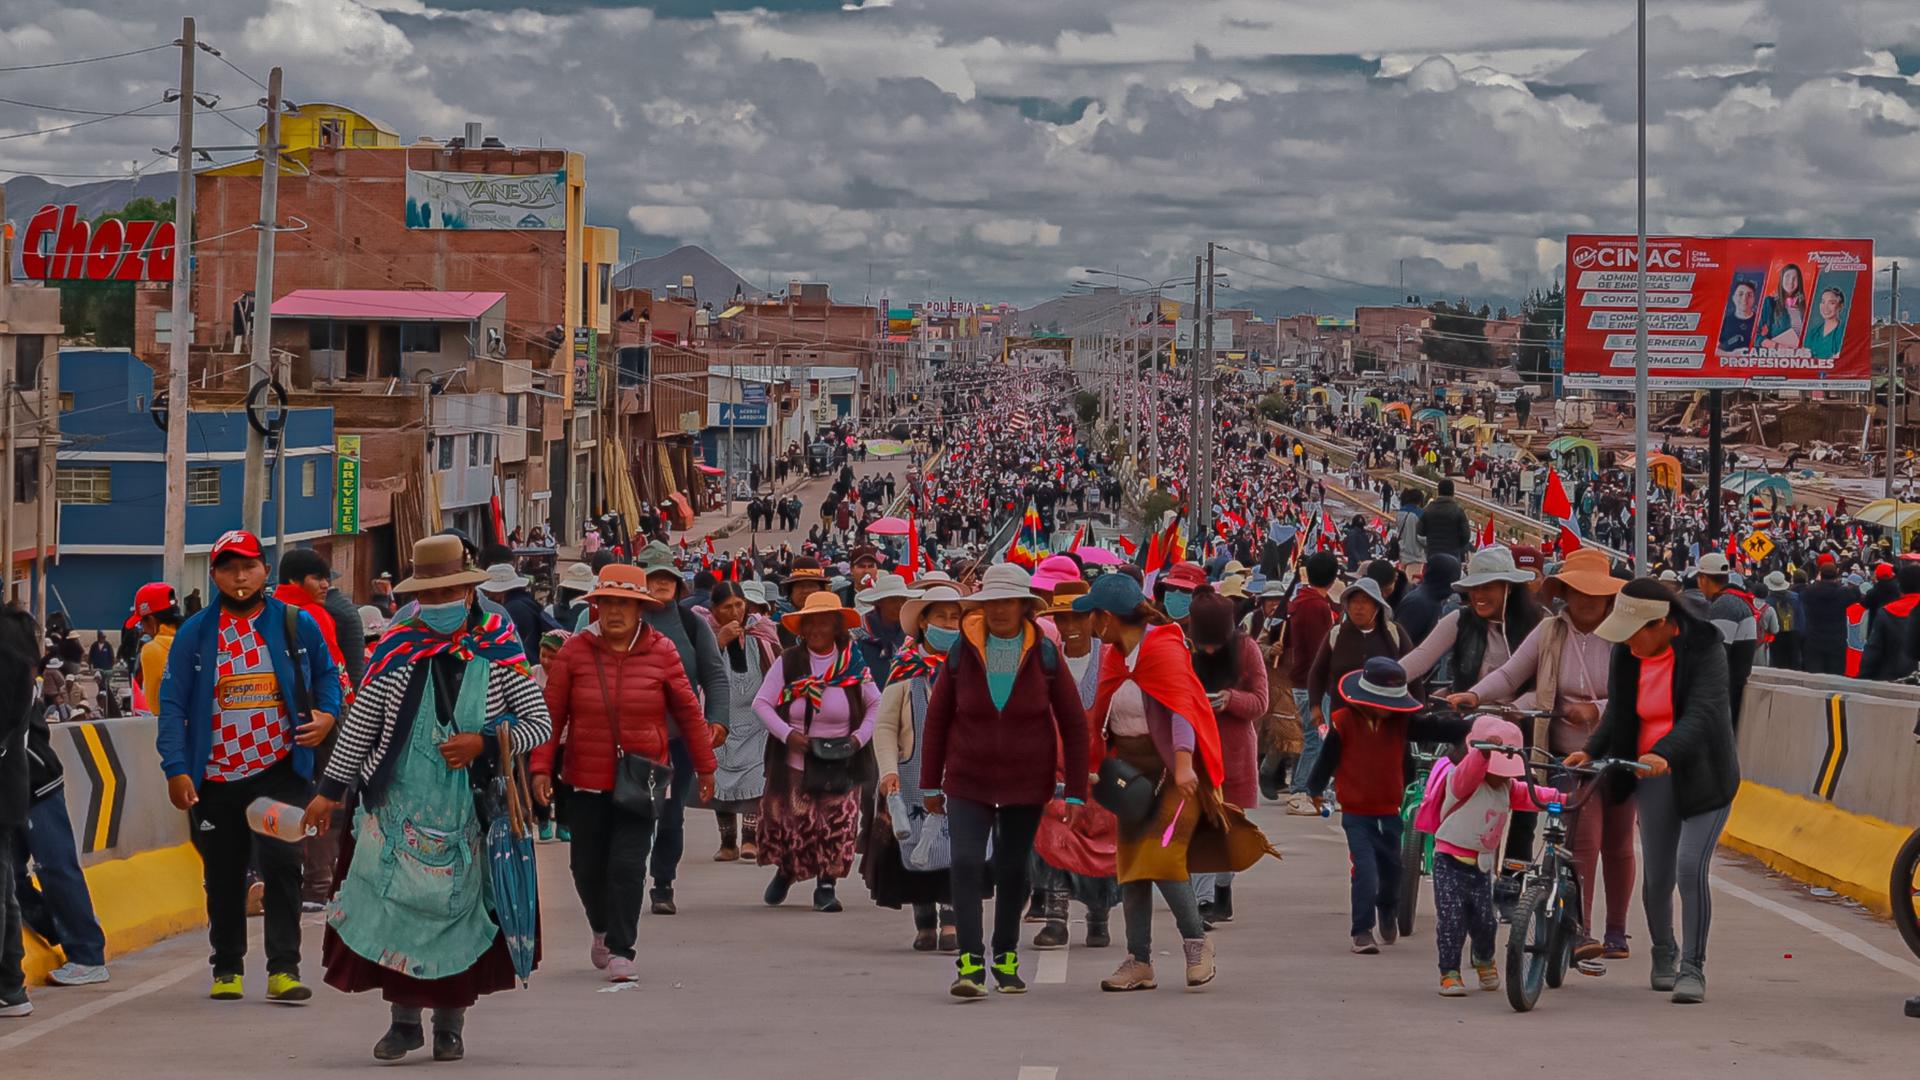 Eine große Menschenmenge auf einer Straße in Peru.